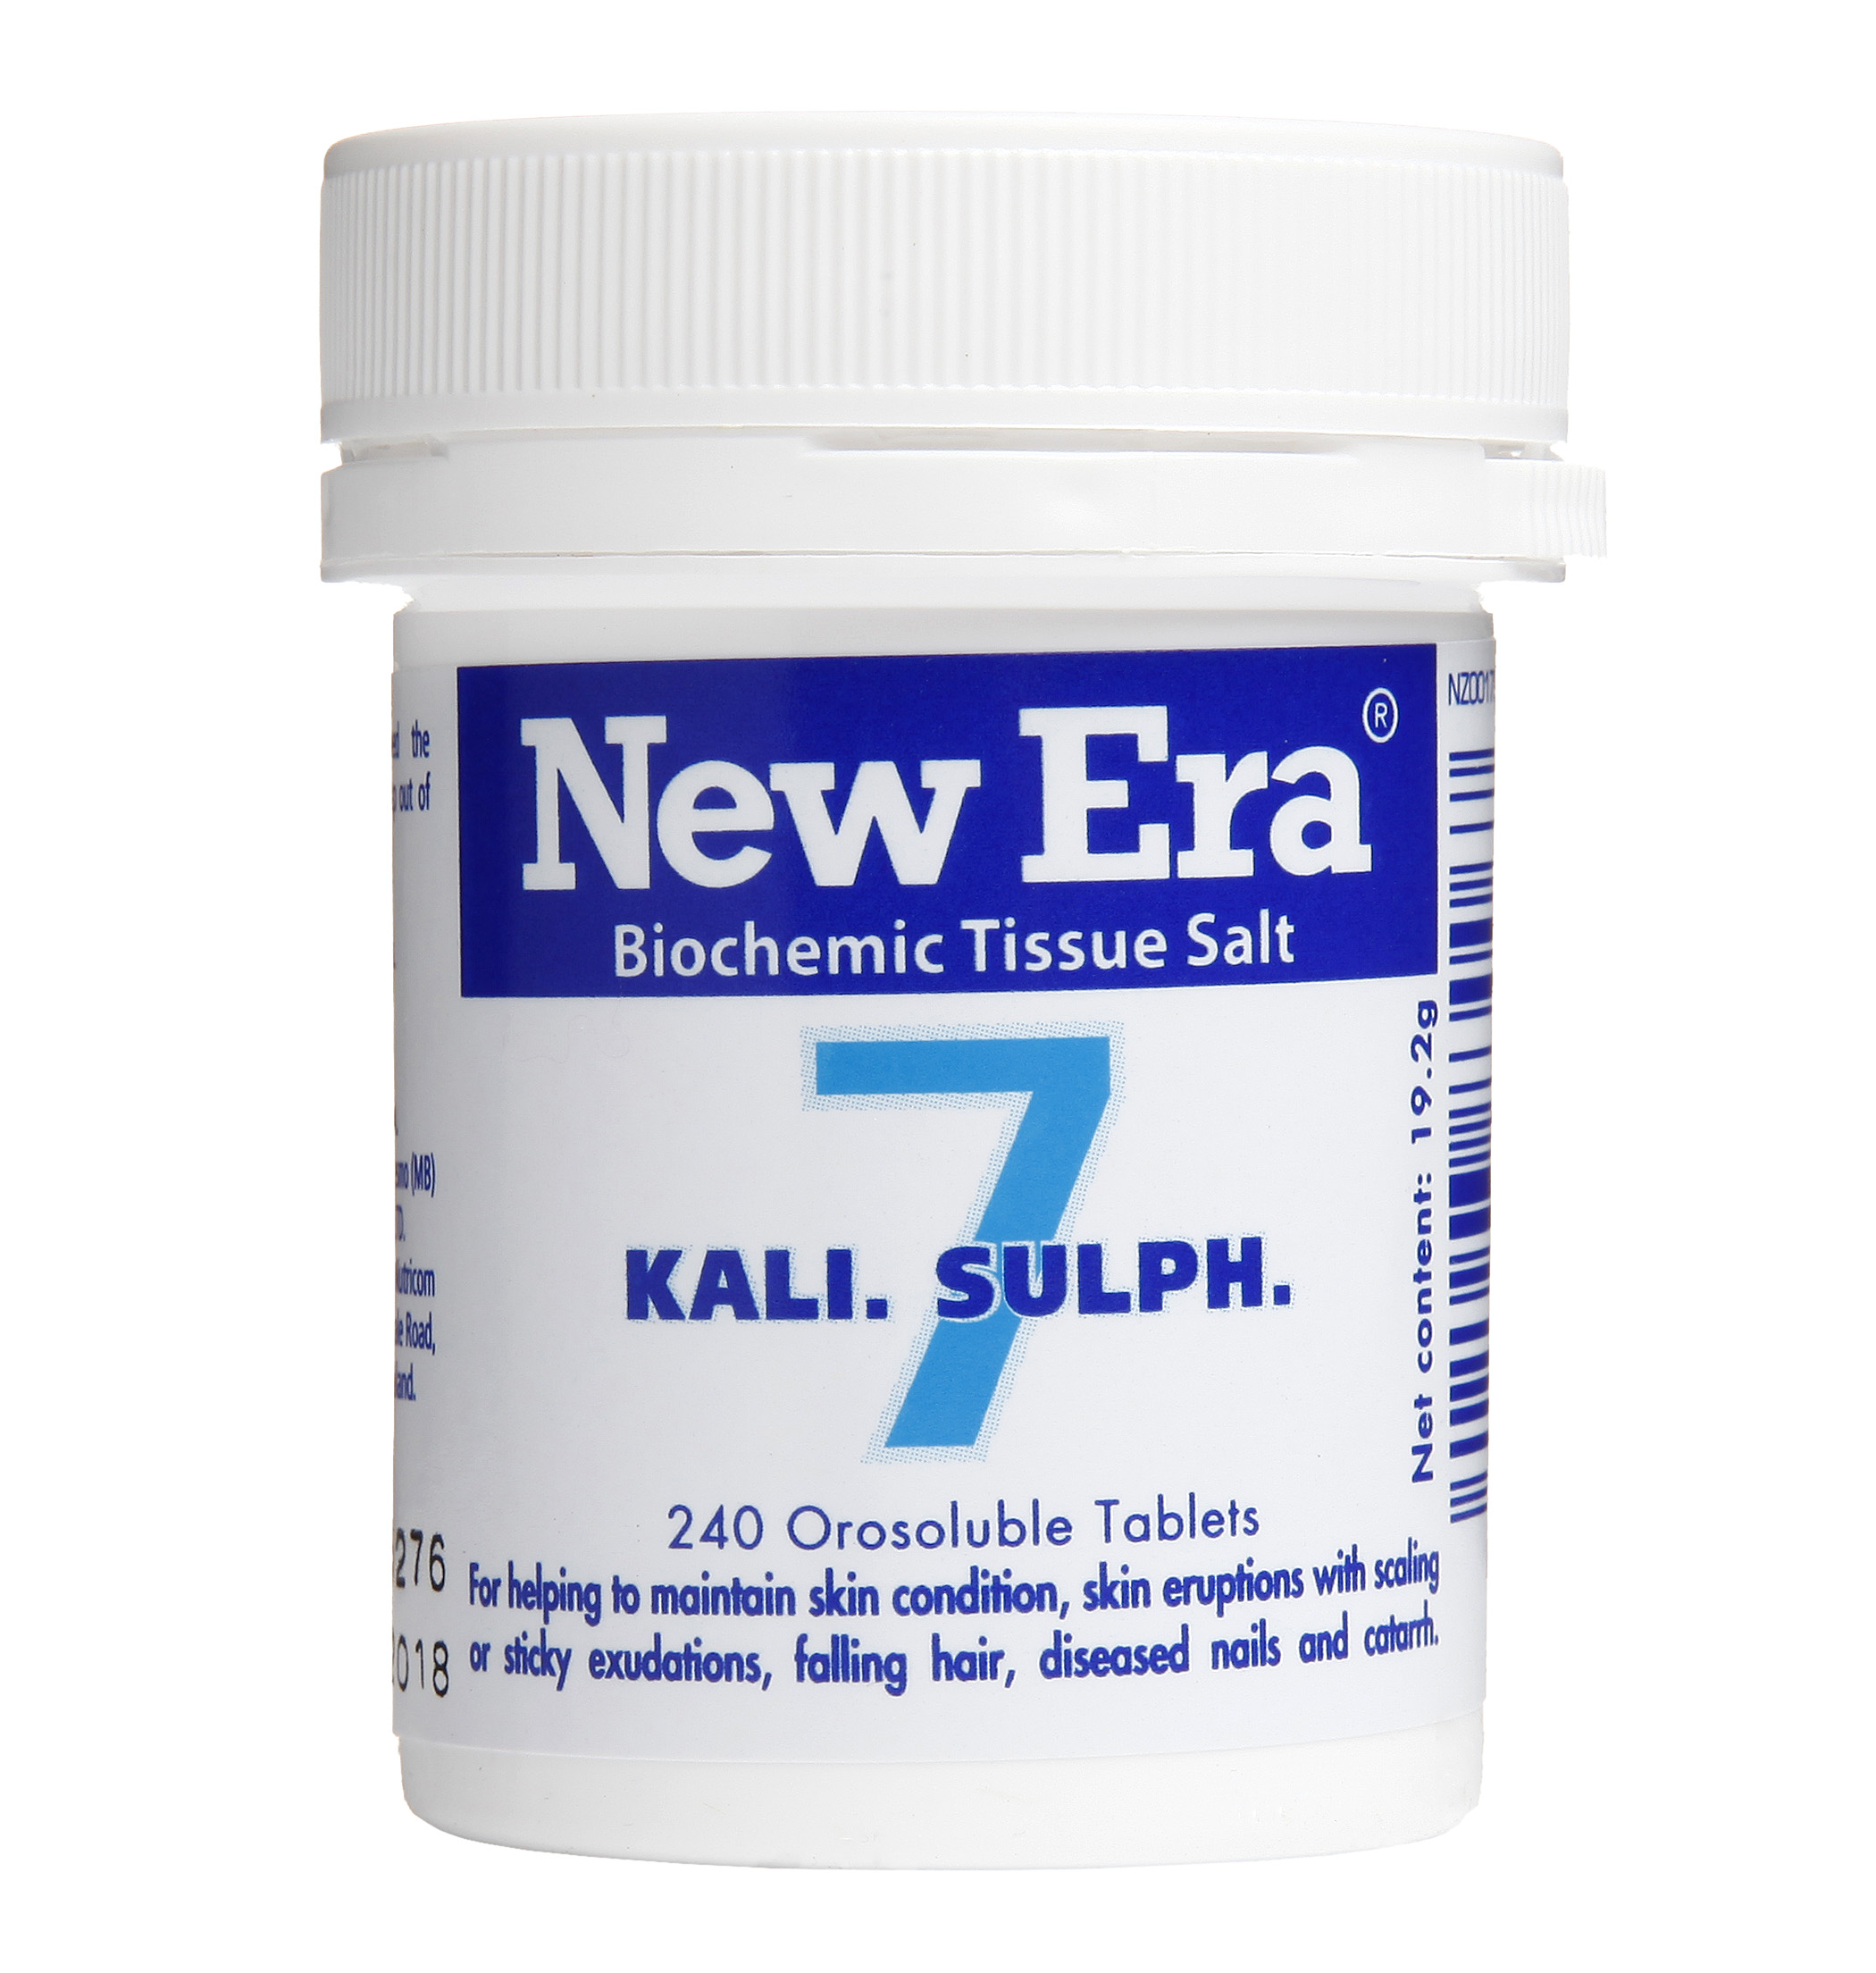 New Era Tissue Salt Kali. Sulph. #07 - The Healer